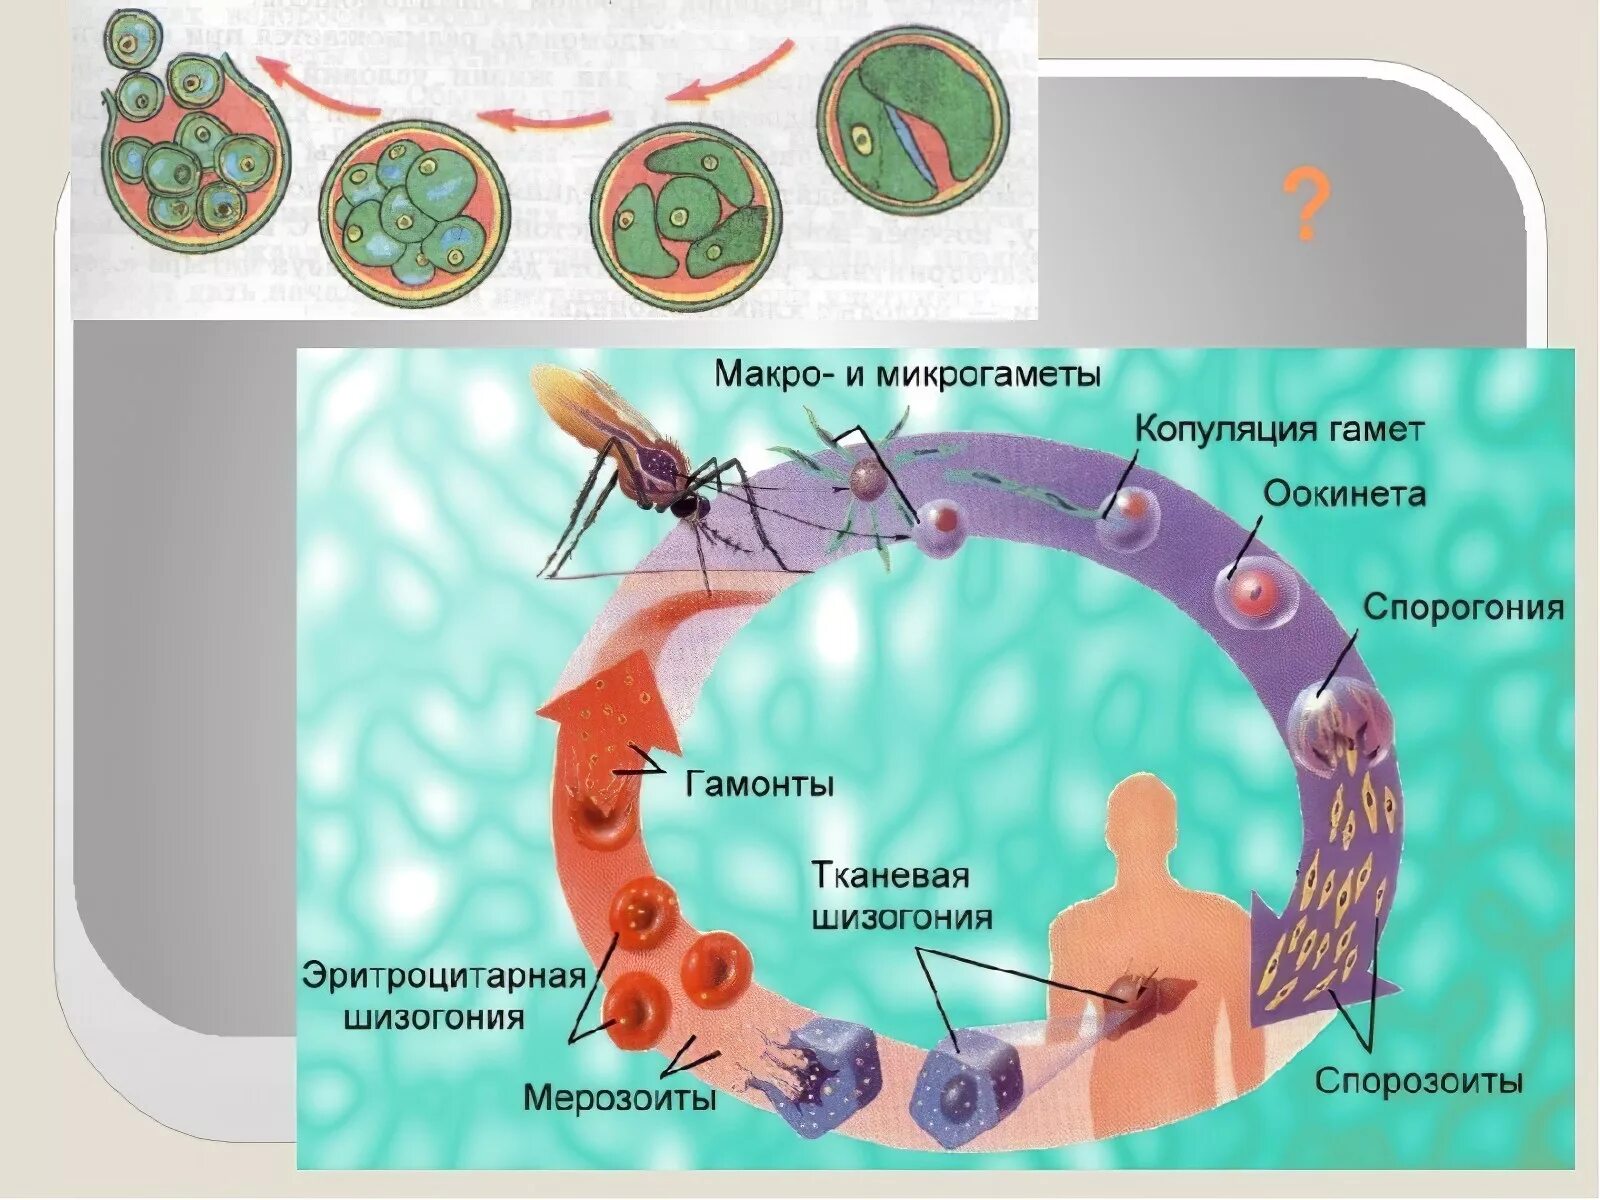 Как происходит заражение человека малярийным плазмодием. Цикл малярийного плазмодия схема. Жизненный цикл малярийного плазмодия. Цикл размножения малярийного плазмодия схема. Схема развития малярийного плазмодия.